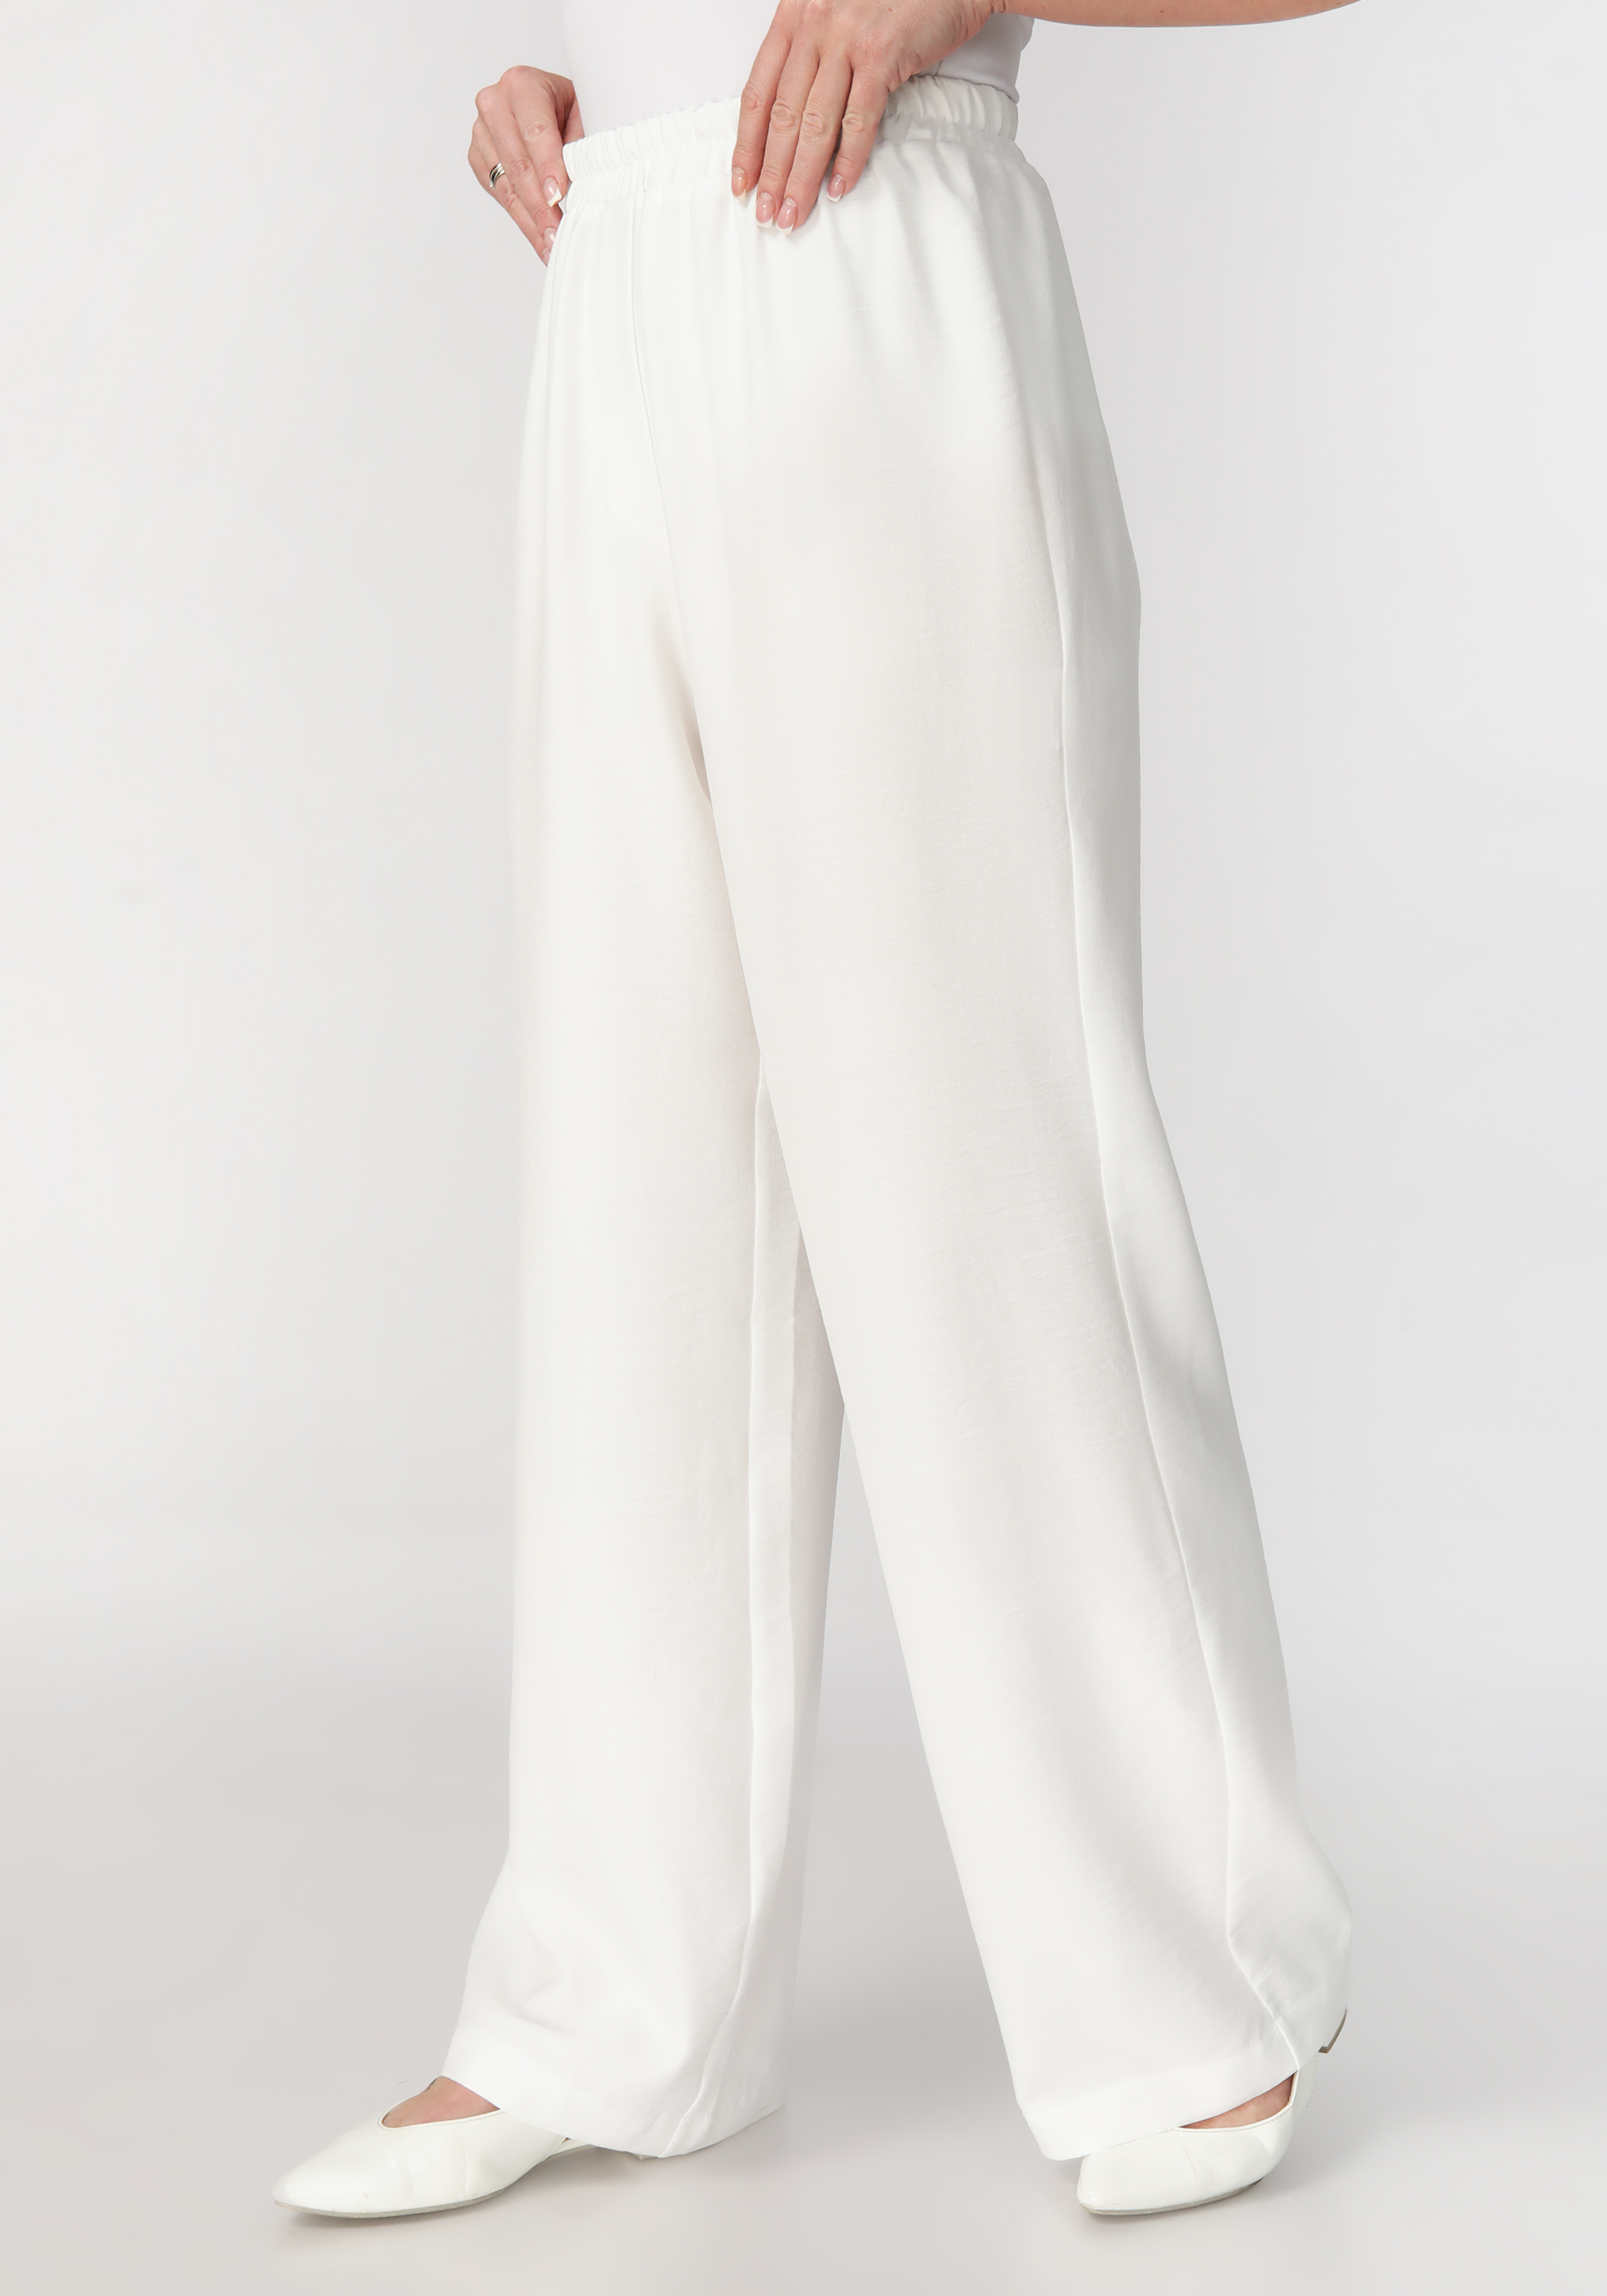 Брюки от бедра с комфортным поясом Bianka Modeno, размер 58, цвет белый - фото 2